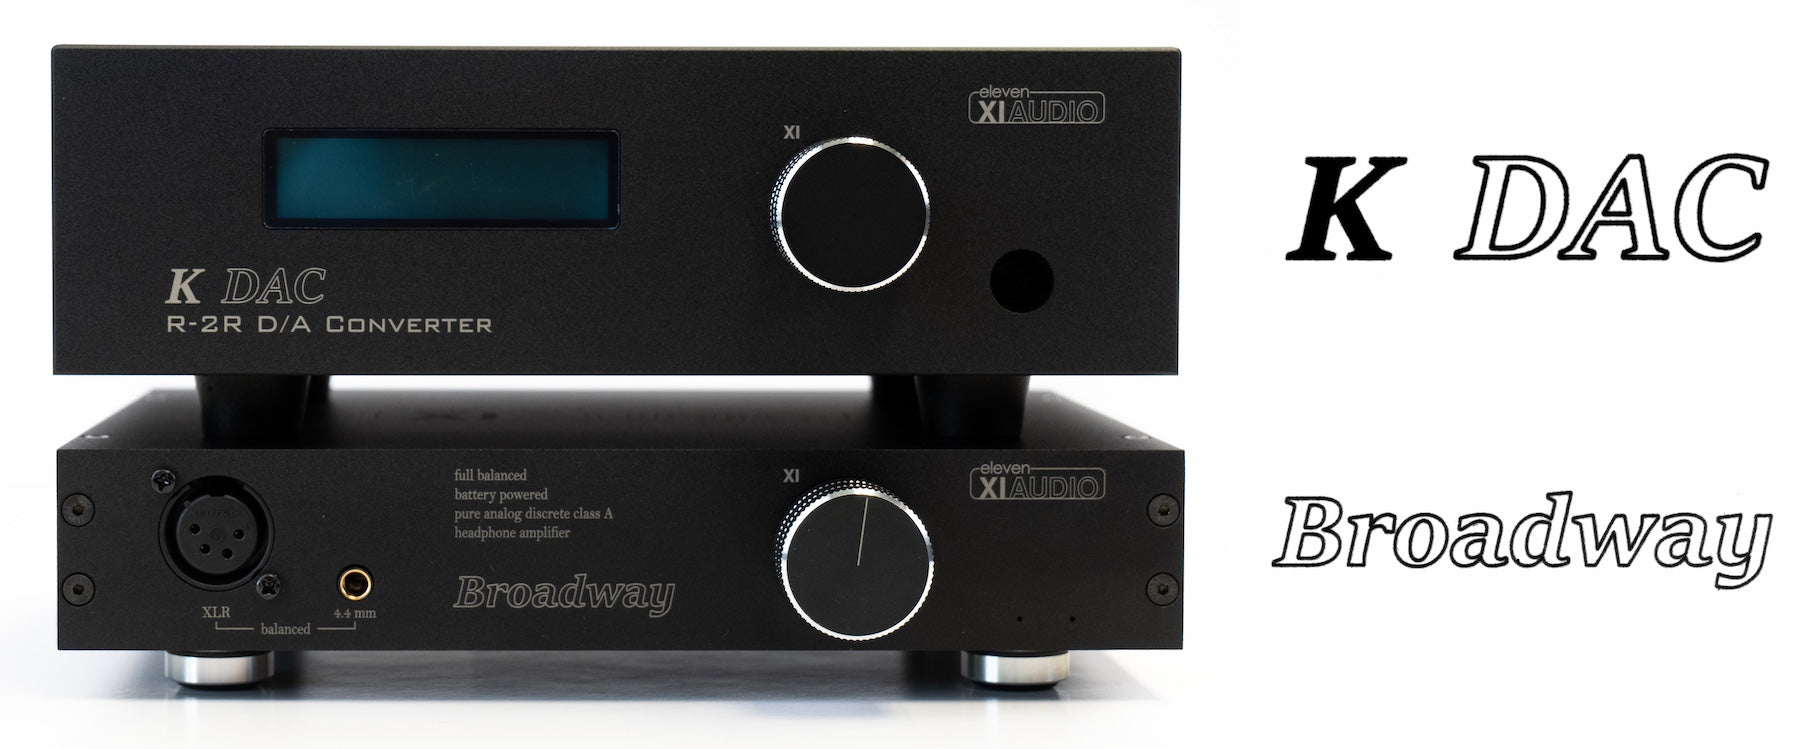 NOUVEAU ! Eleven Audio XIAUDIO K DAC R-2R Convertisseur numérique/analogique